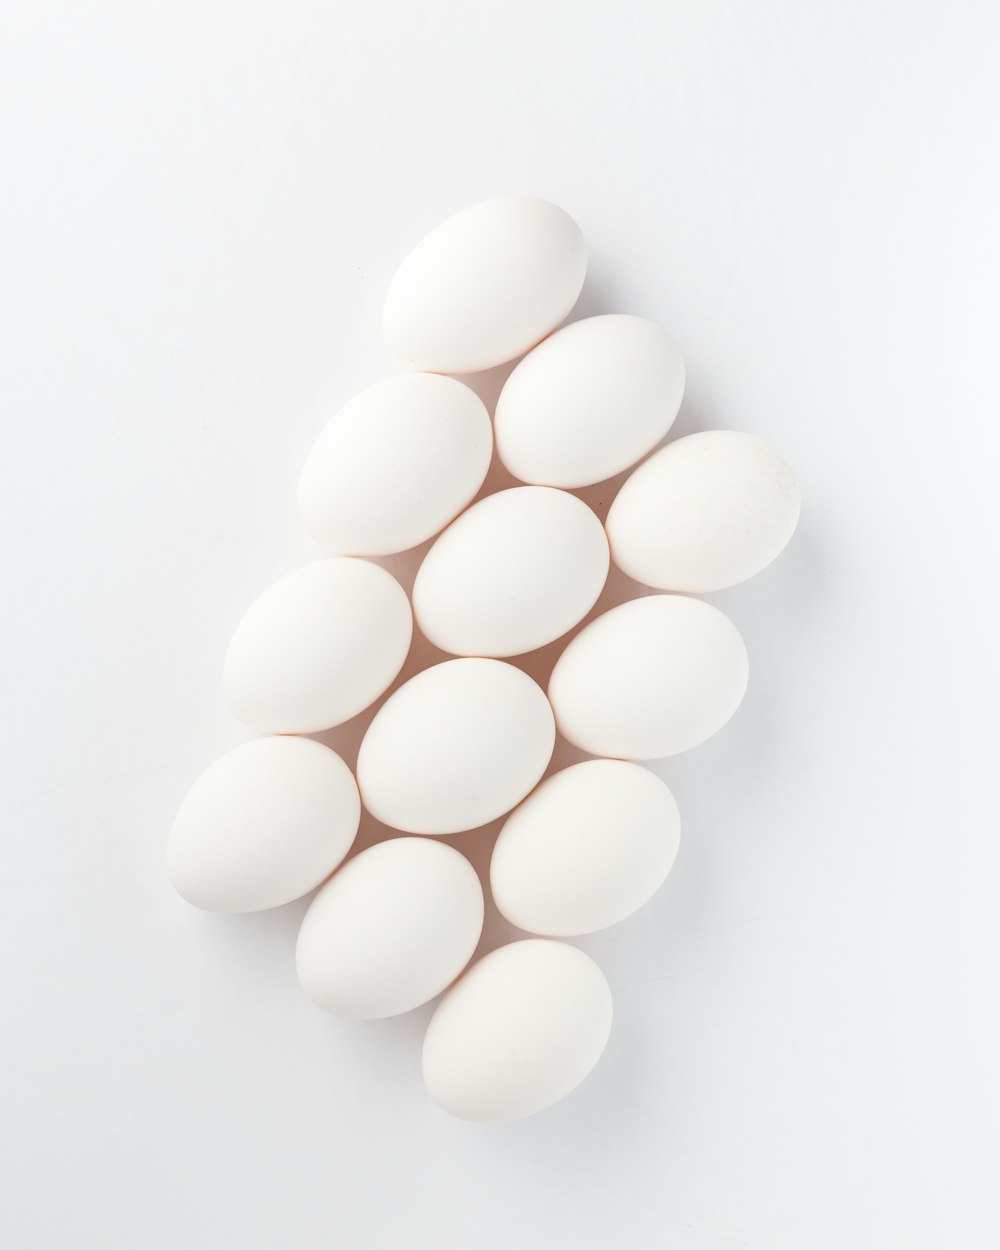 흰 표면에 12 개의 흰 달걀